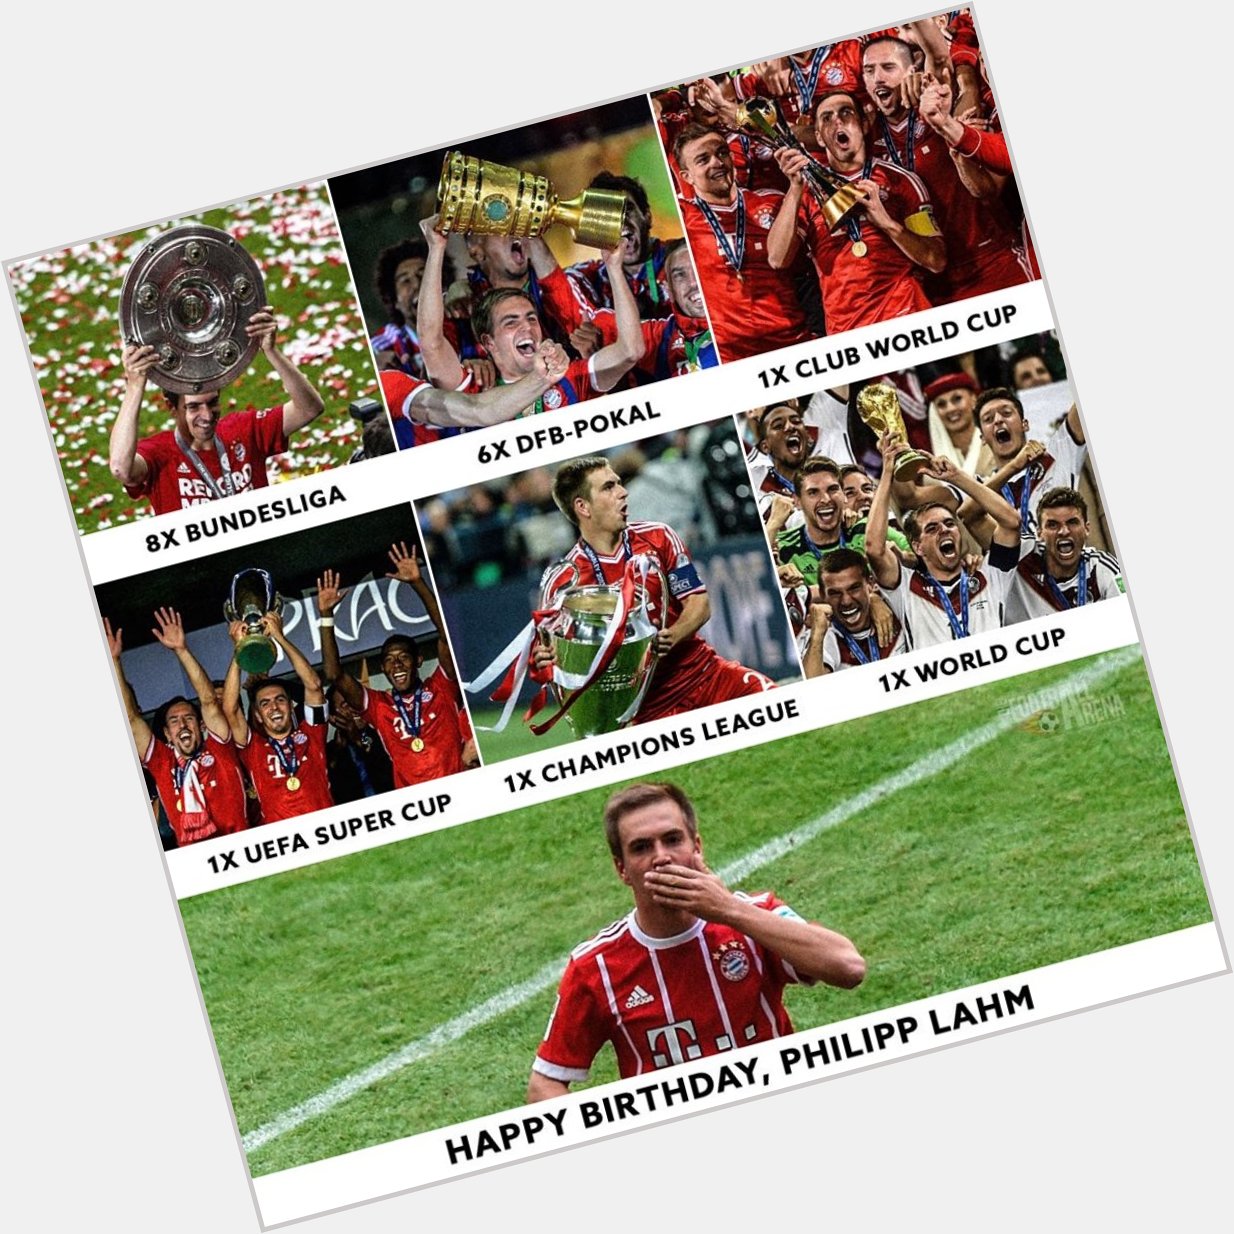 Happy Birthday, Philipp Lahm  